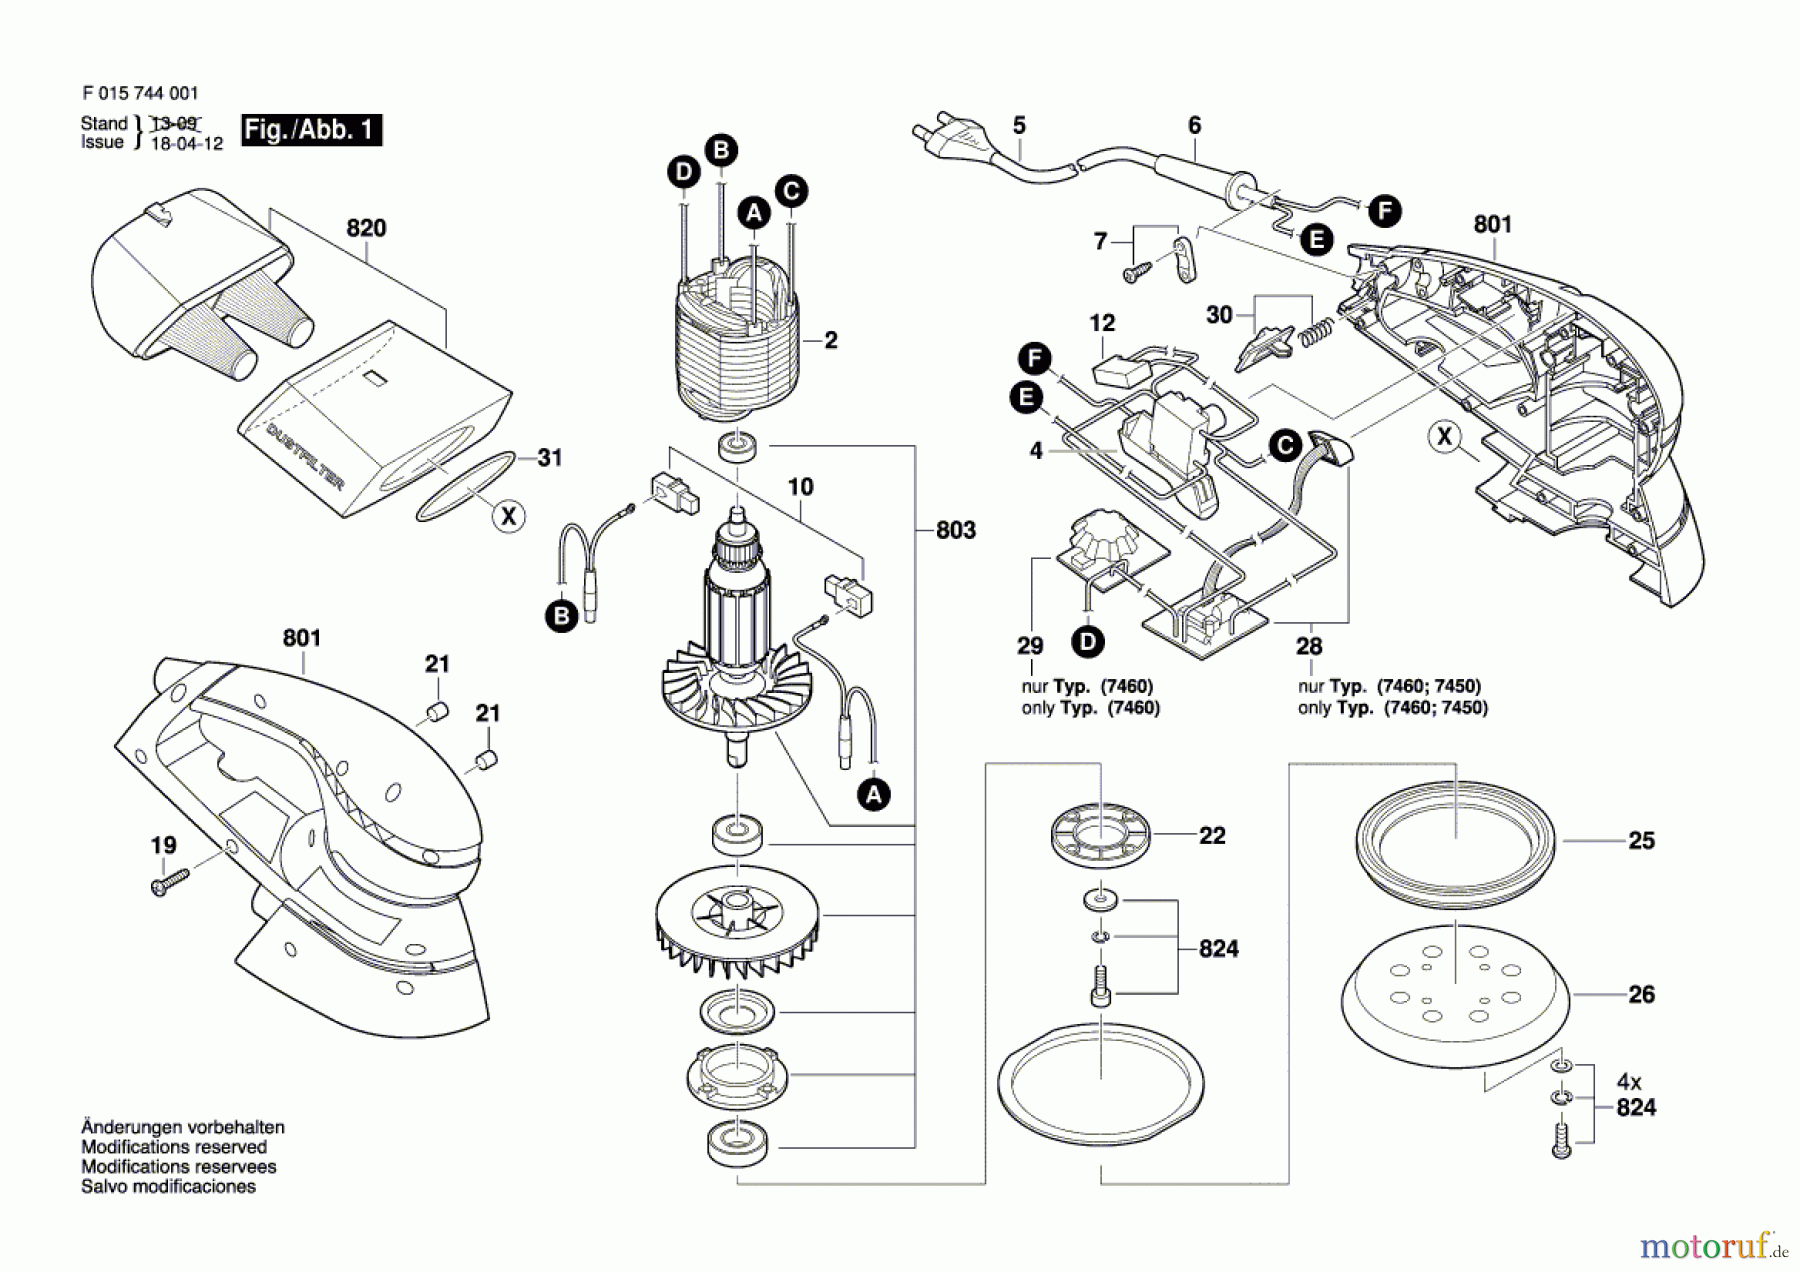  Bosch Werkzeug Exzenterschleifer 7440 Seite 1